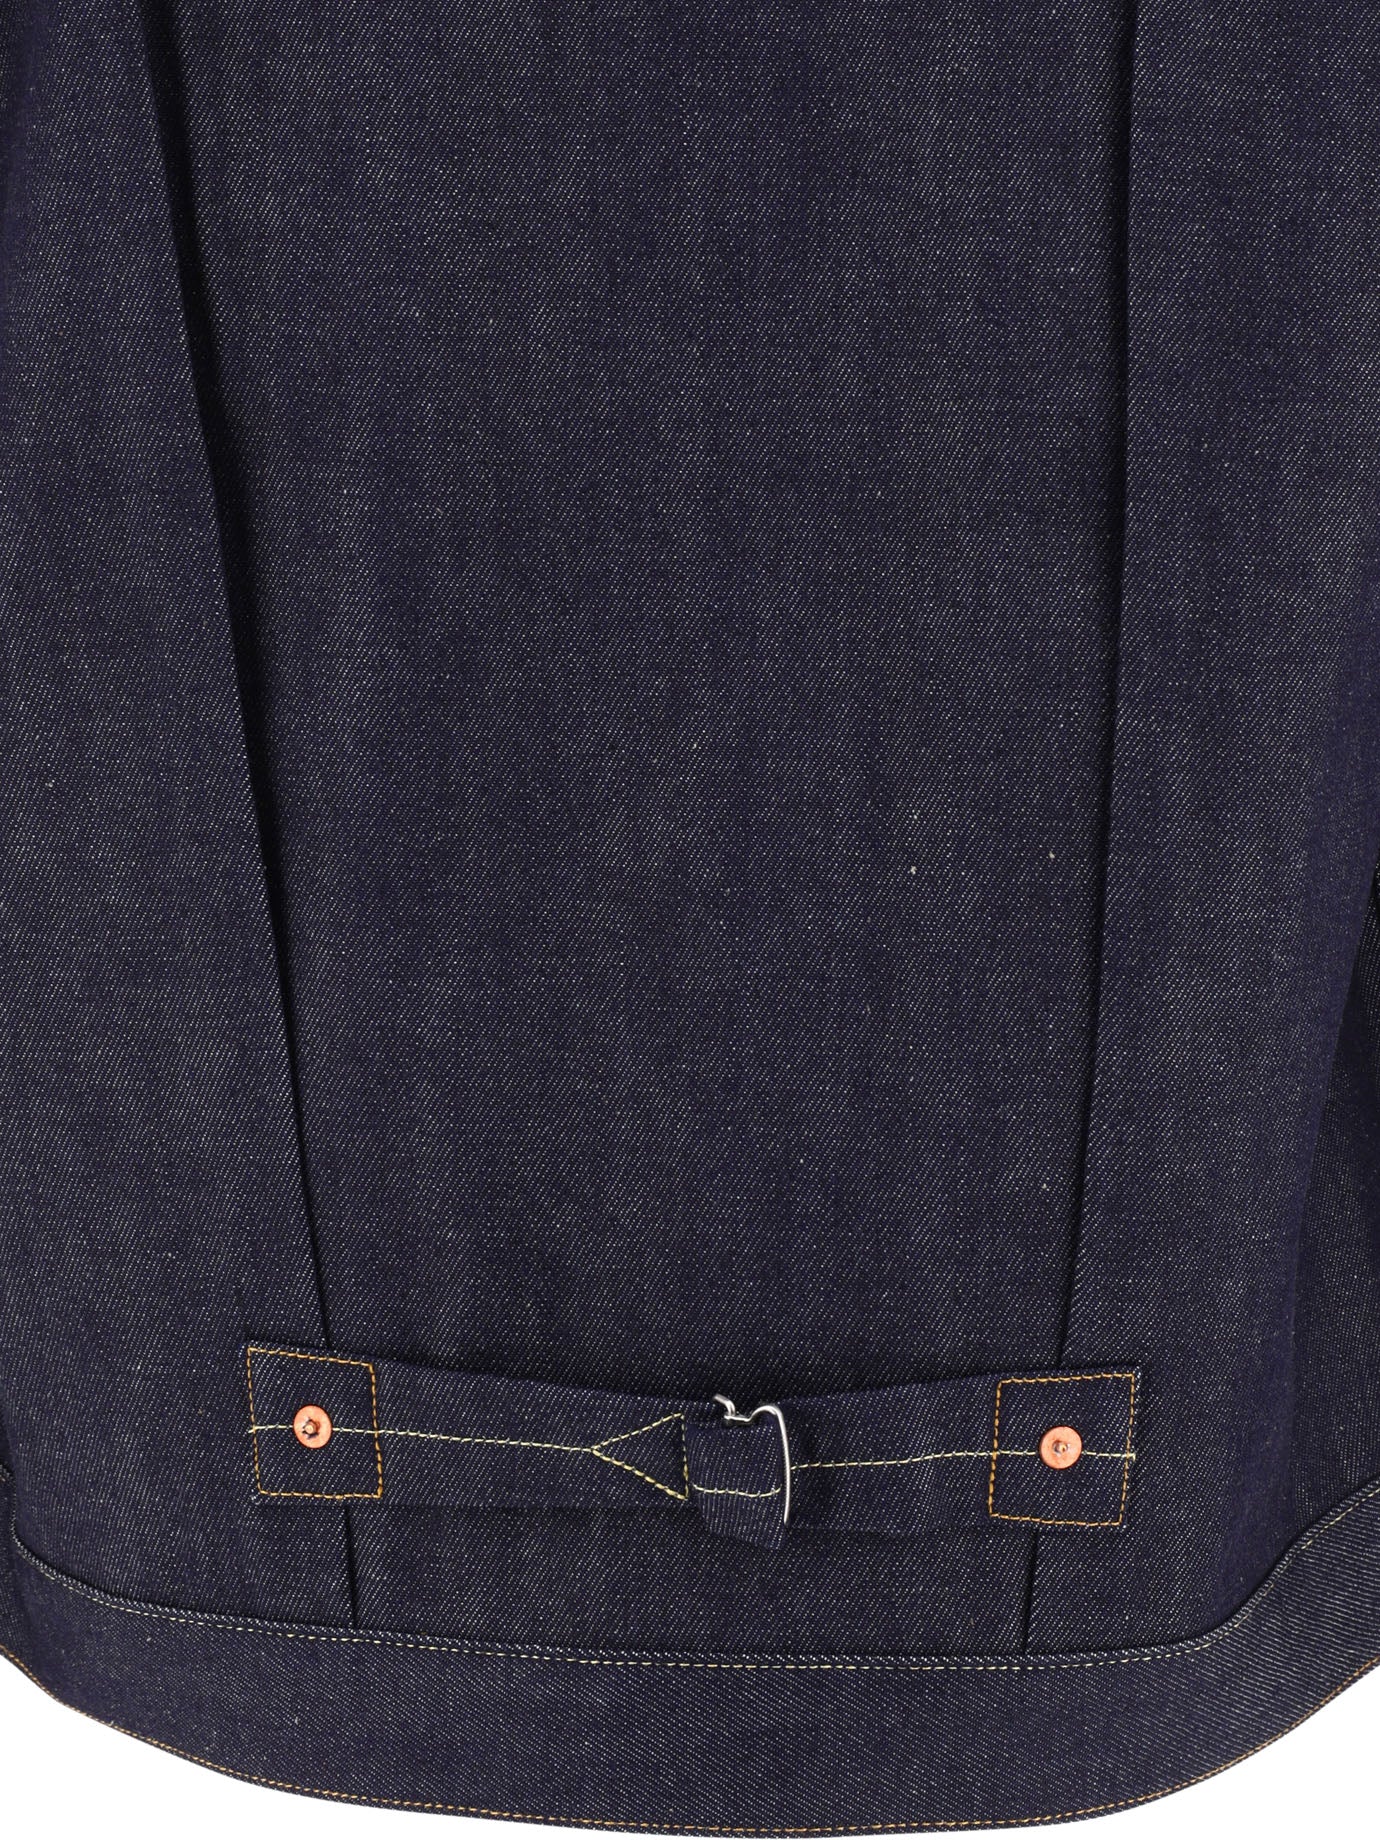 Levi's Vintage Clothing 1936 Type I Denim Jacket